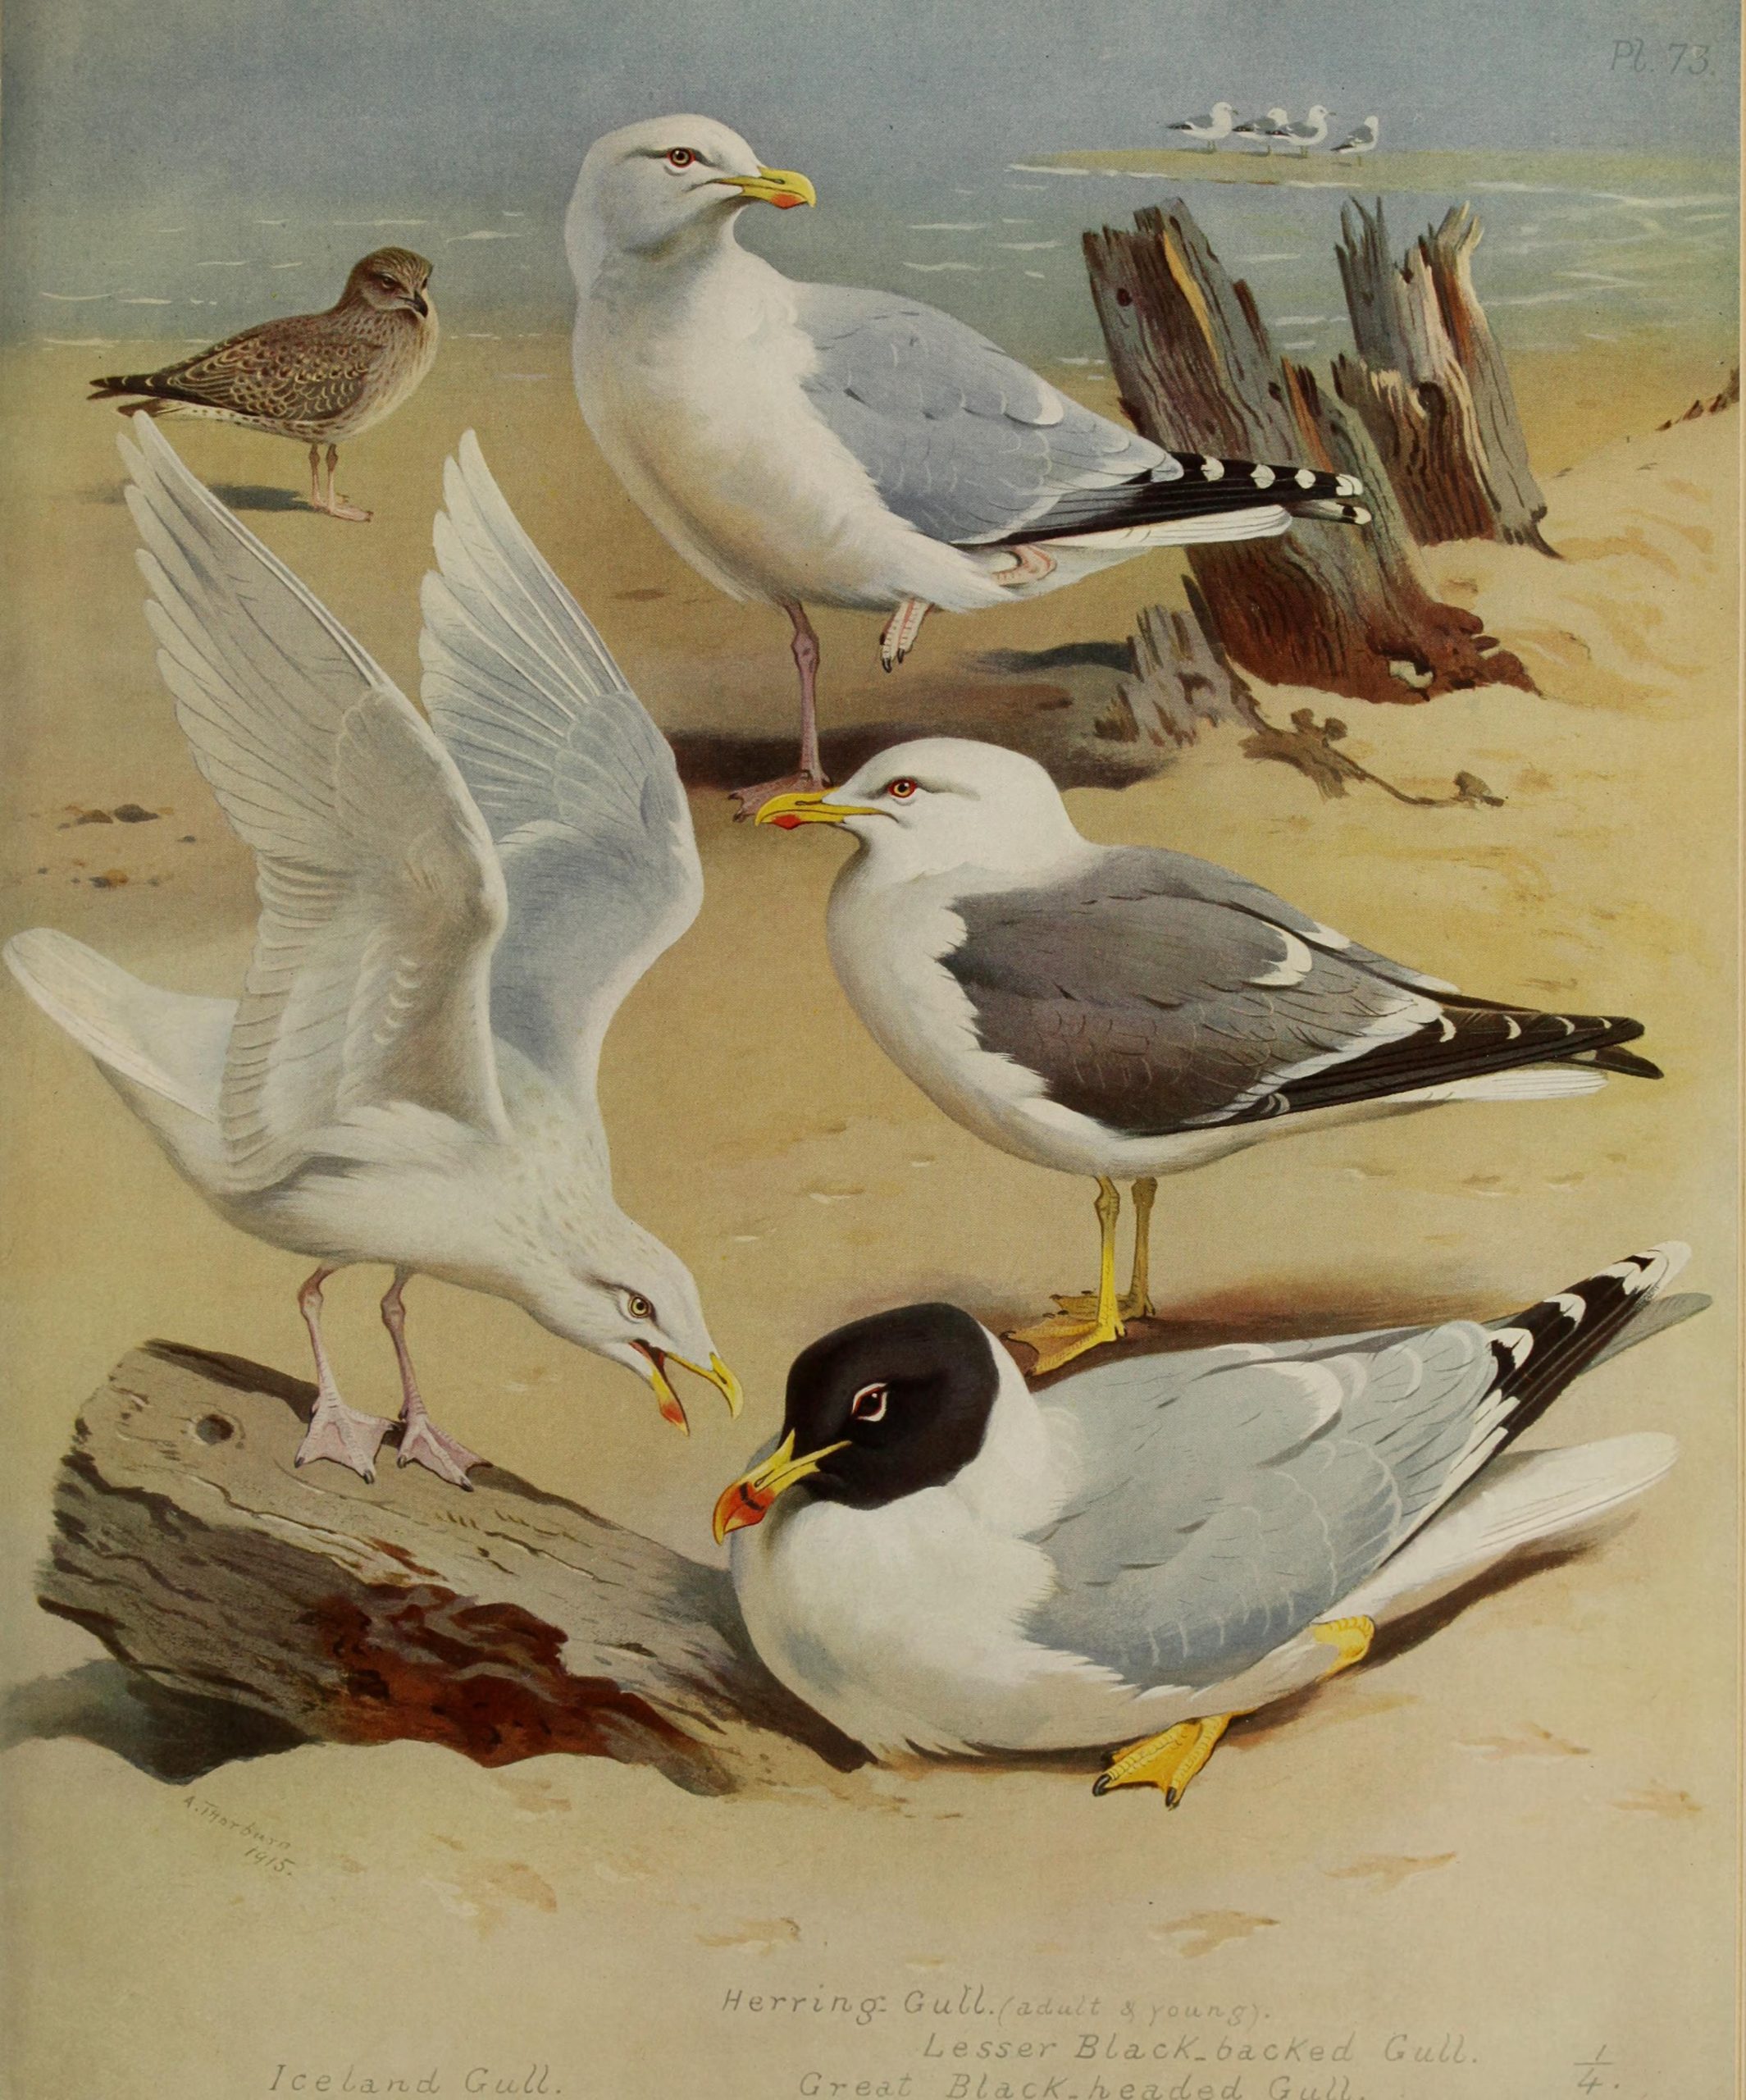 Various seagulls on the beach